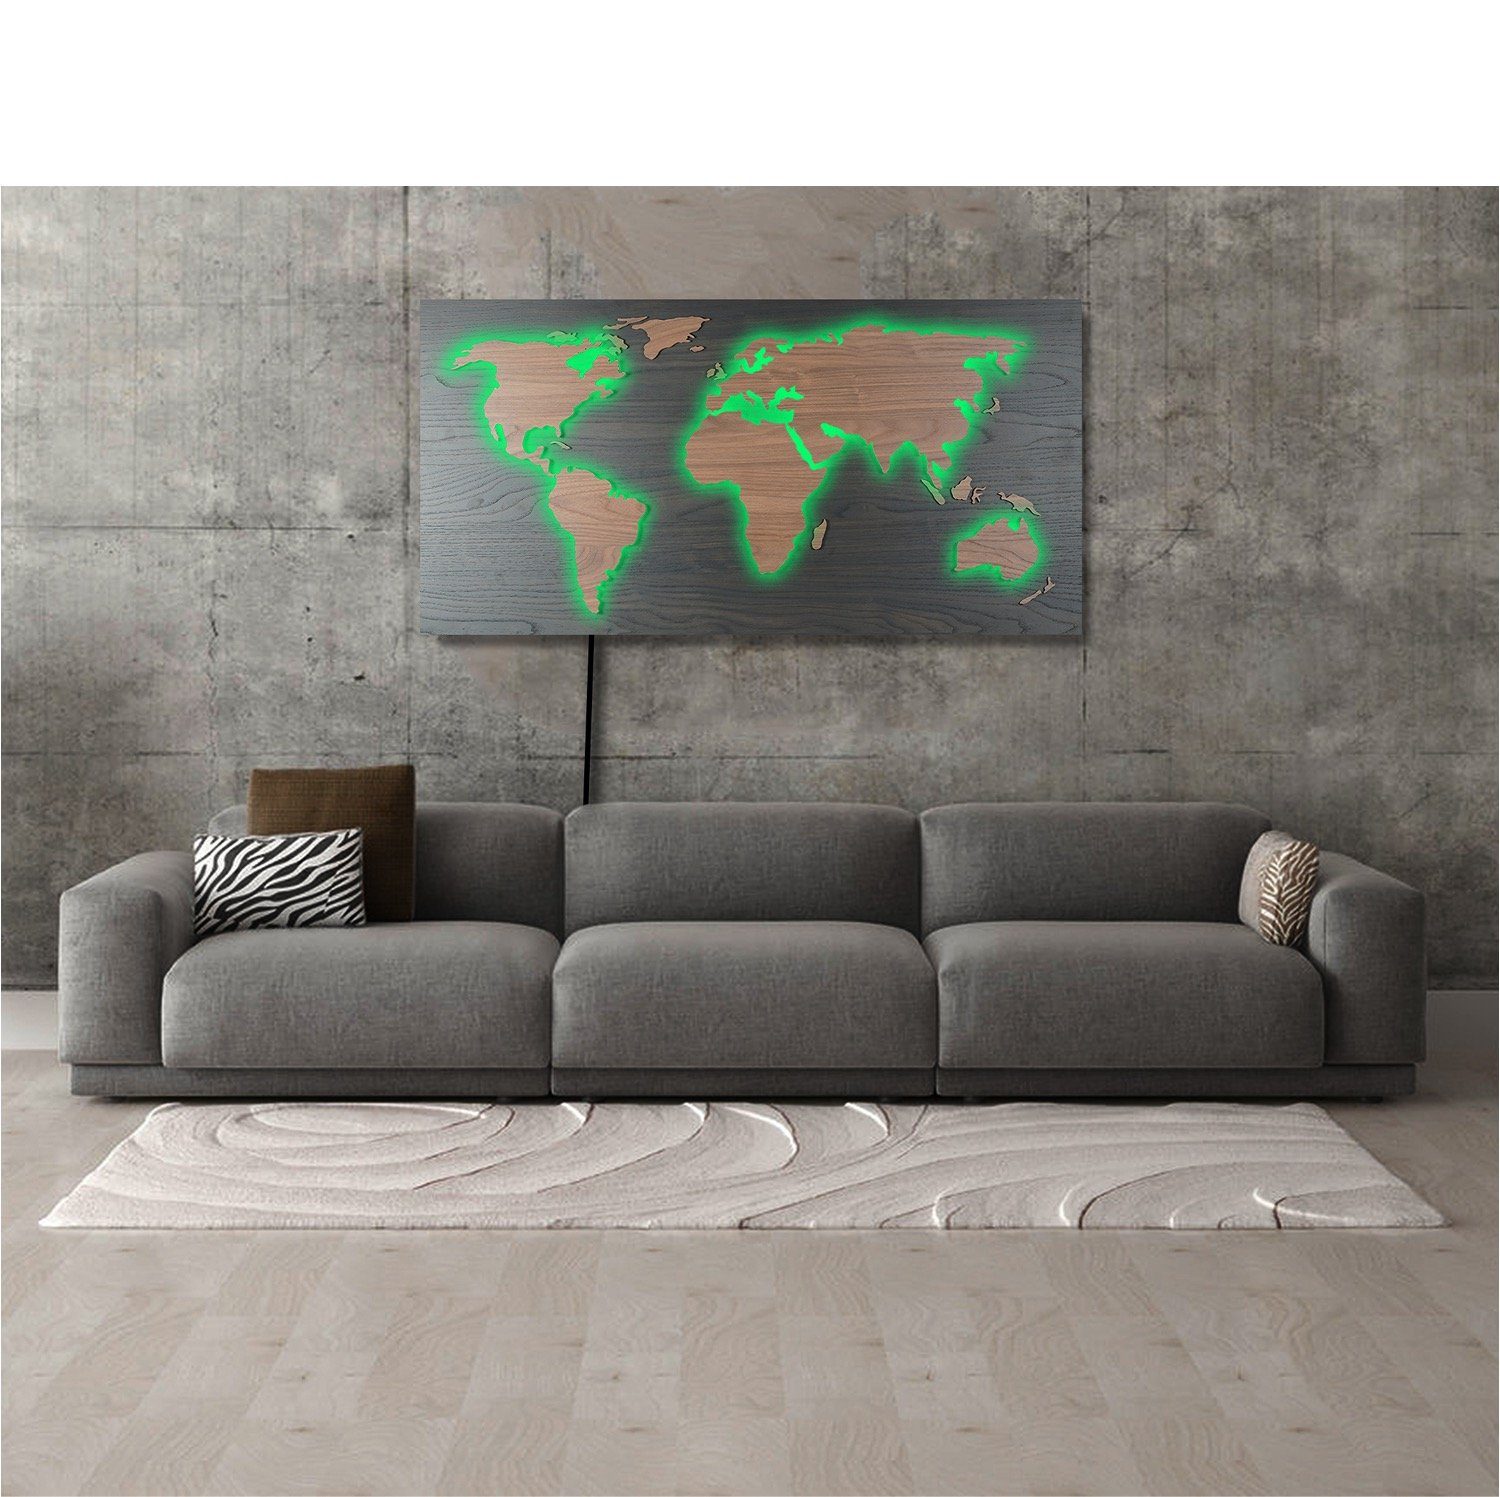 ZENLED Wanddekoobjekt Weltkarte MAPPA LUX HOLZ-Optik 110x57cm - Rustikale Deko 3D-Lichtbild, Kontinente umleuchtet mit bunt steuerbaren RGB LEDs über Fernbedienung Rückplatte Walnuss Schwarz, Länder Walnuss Braun